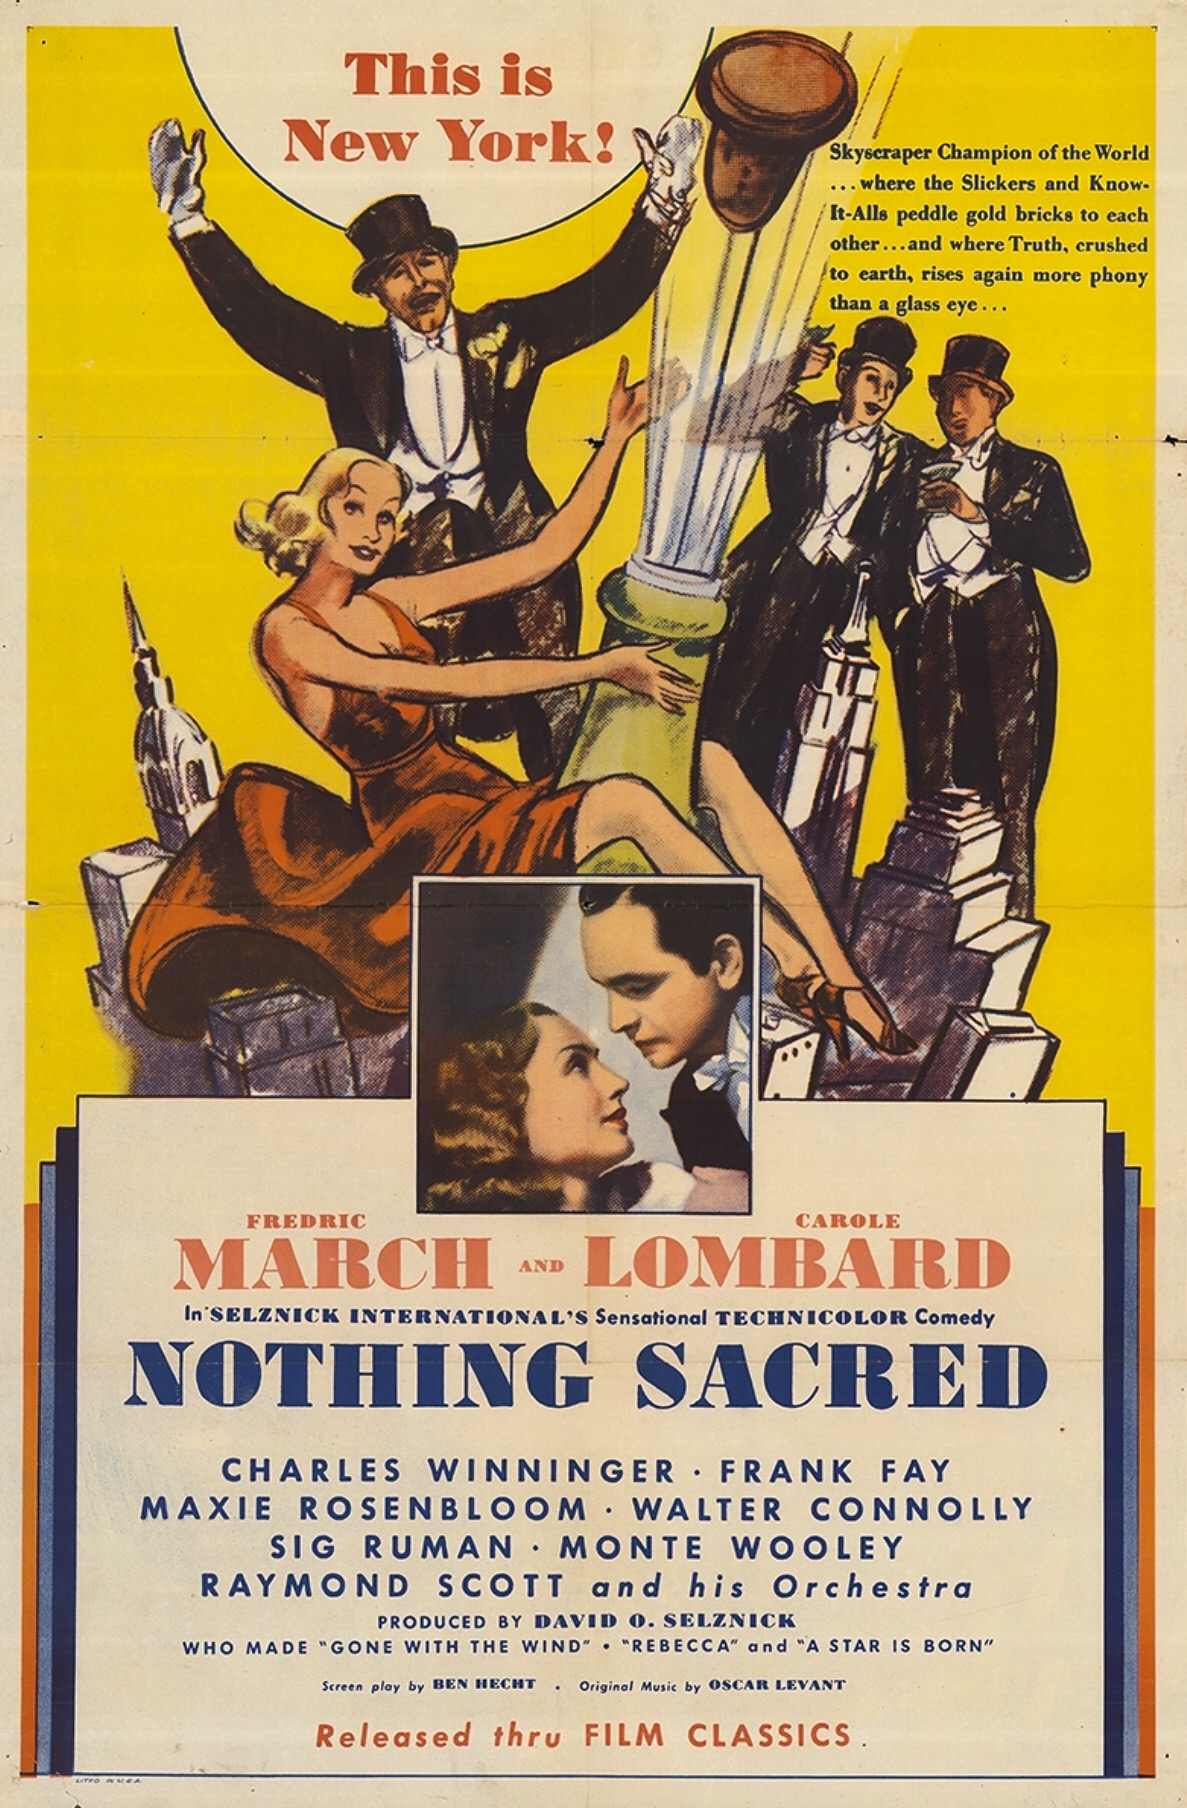 NOTHING SACRED (1937)